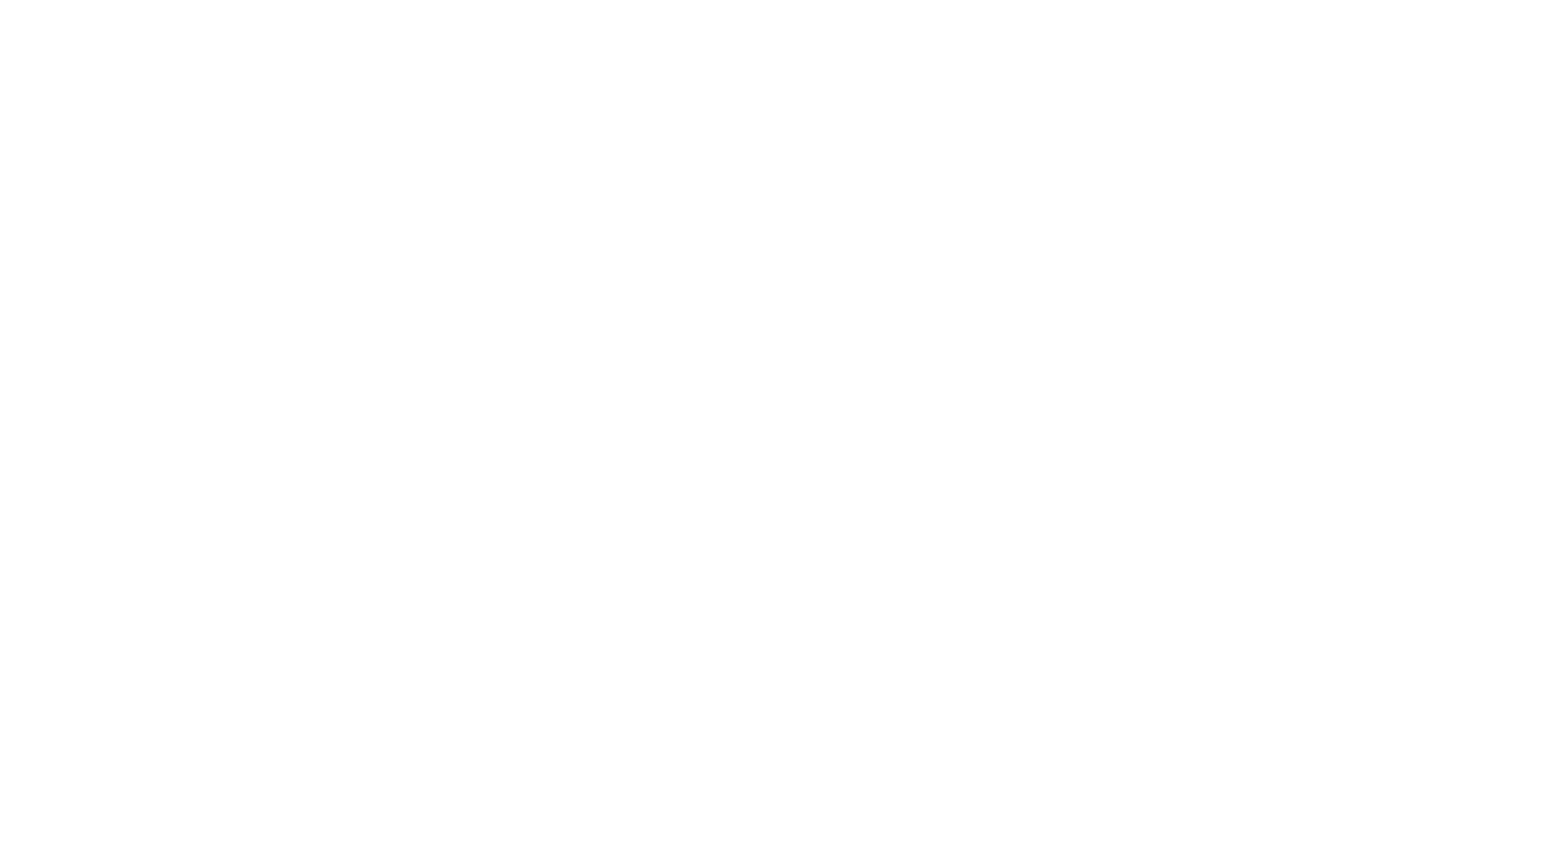 Banorte logo for dark backgrounds (transparent PNG)